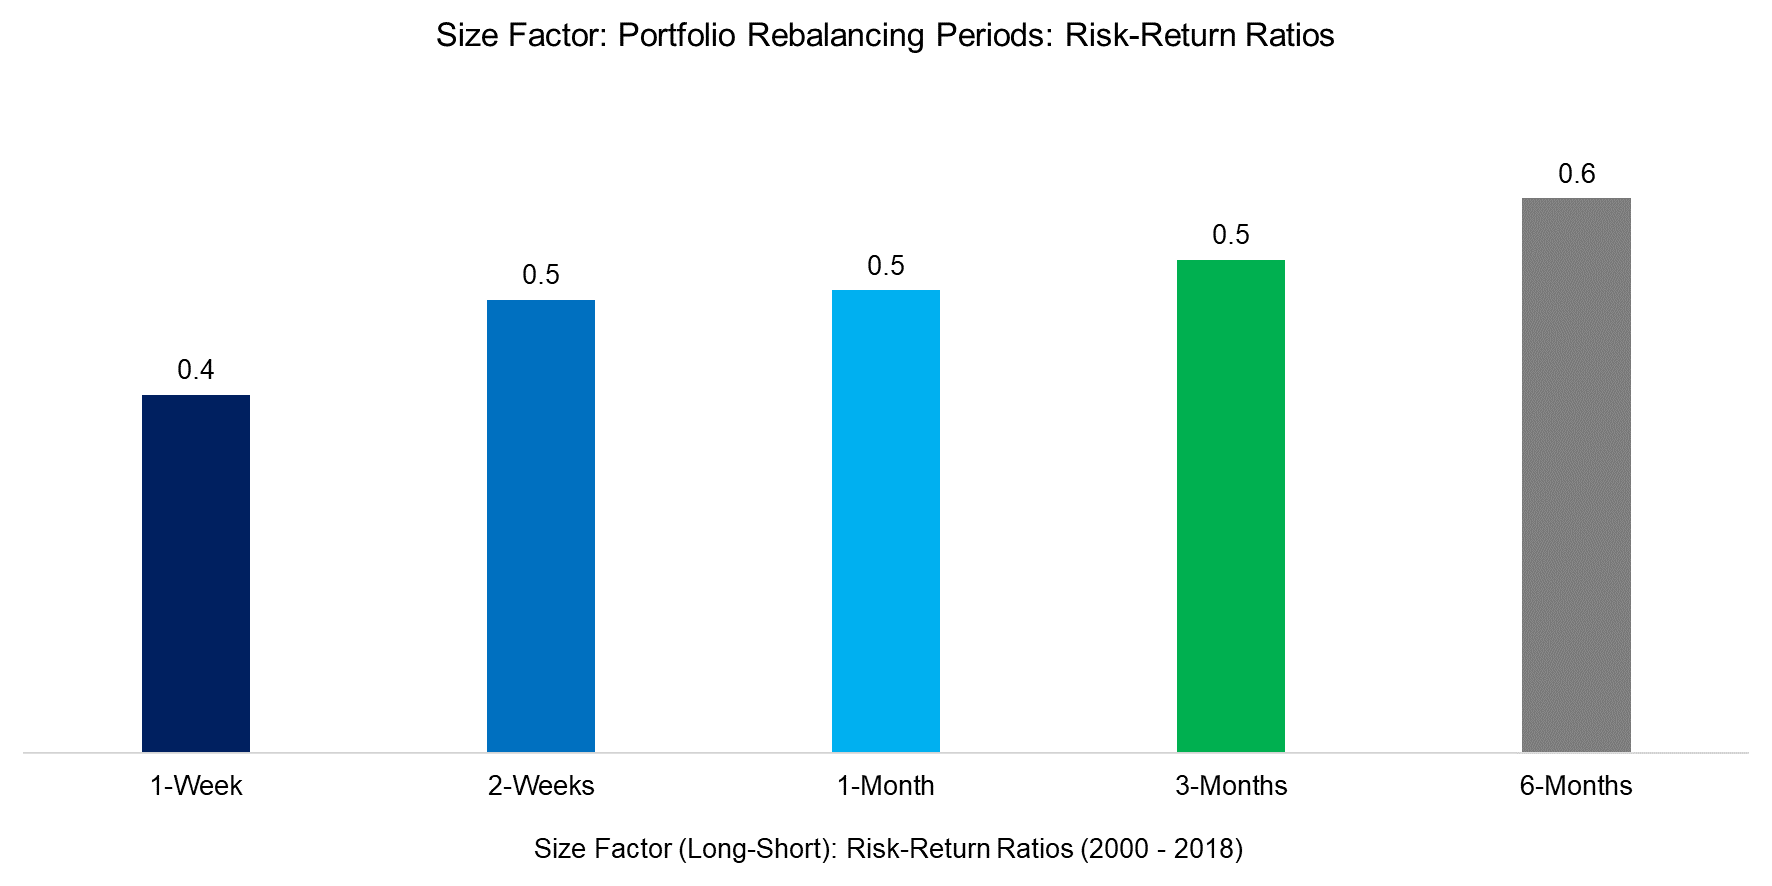 Size Factor Portfolio Rebalancing Periods Risk-Return Ratios